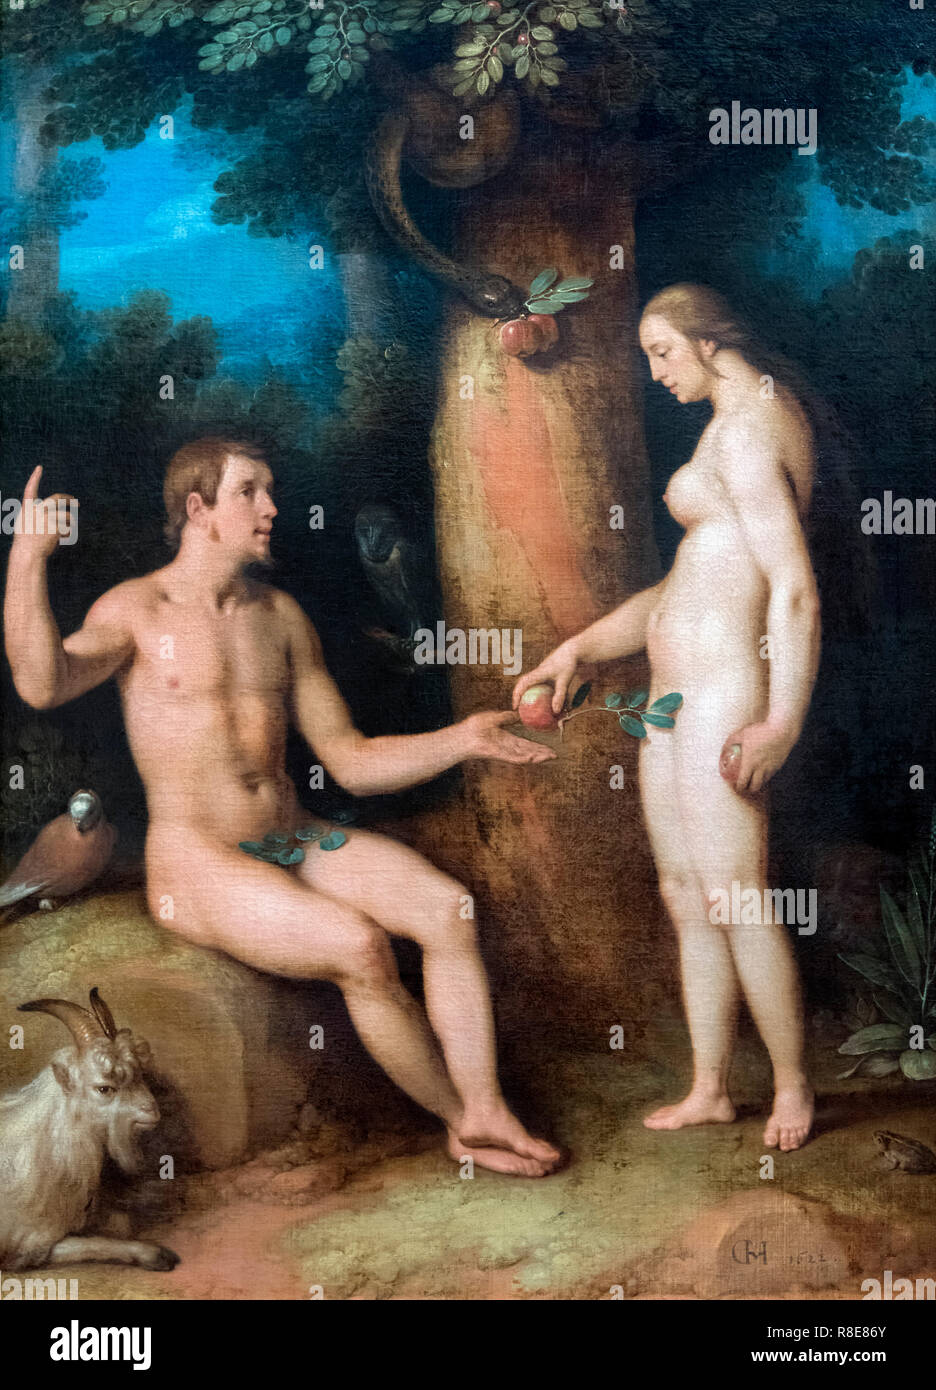 Adam et Eve de Cornelis van Haarlem (Cornelis Corneliszoon van Haarlem : 1562-1638), huile sur toile, 1622 Banque D'Images